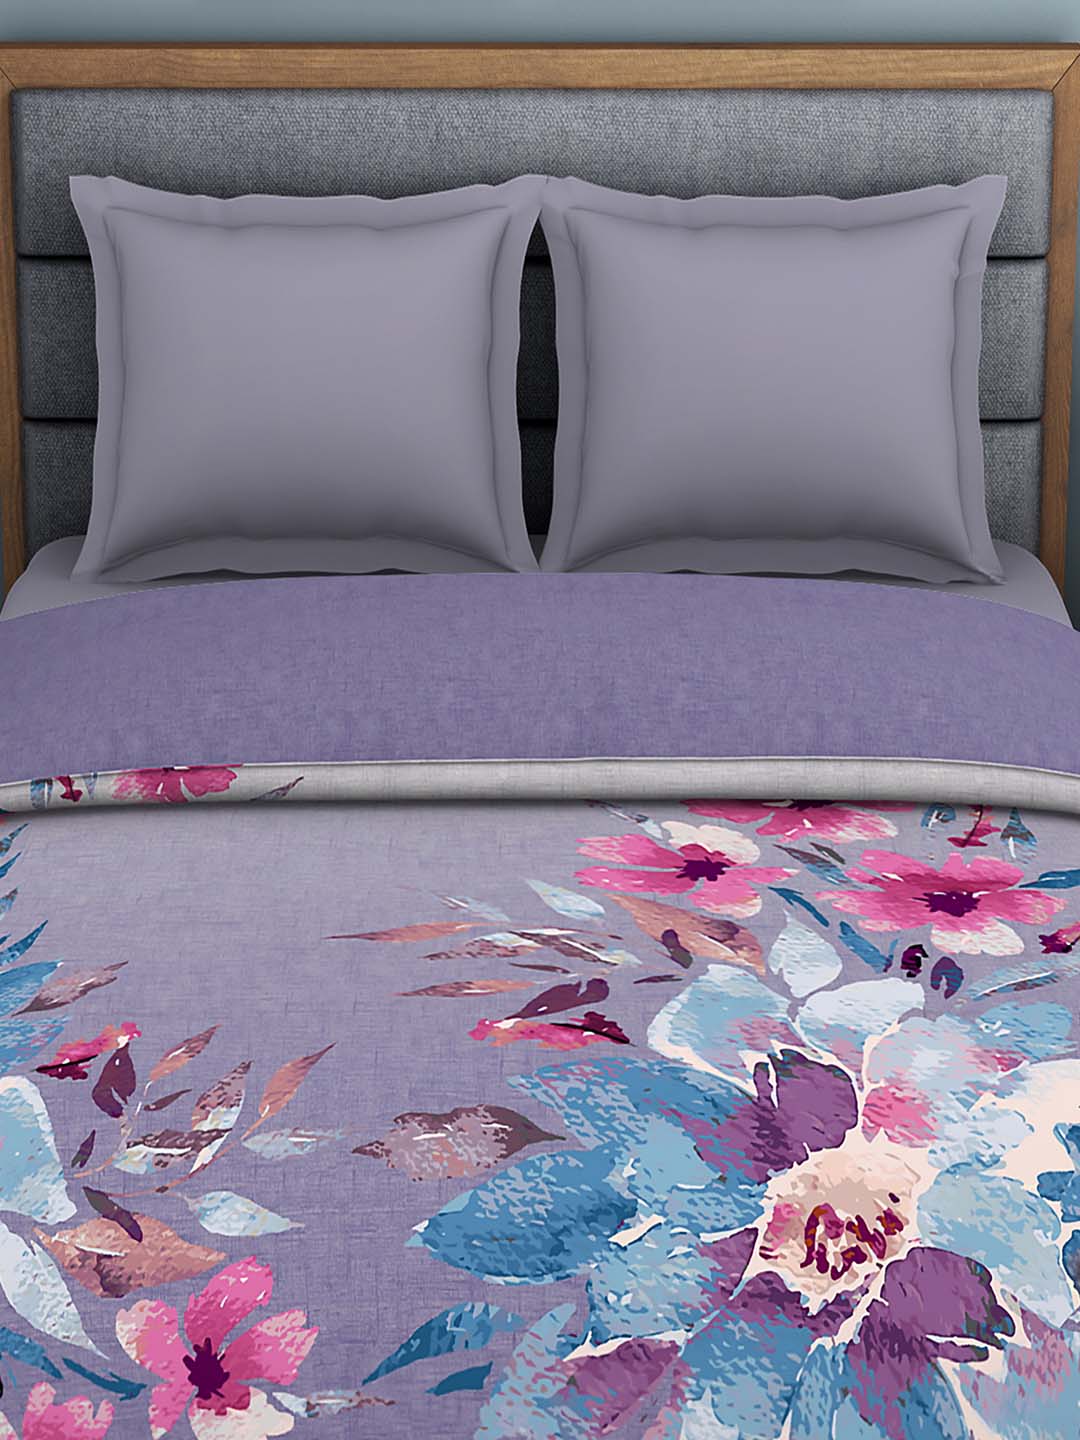 Spaces 180 TC 100% Organic Cotton Double Bed Quilt (Purple)